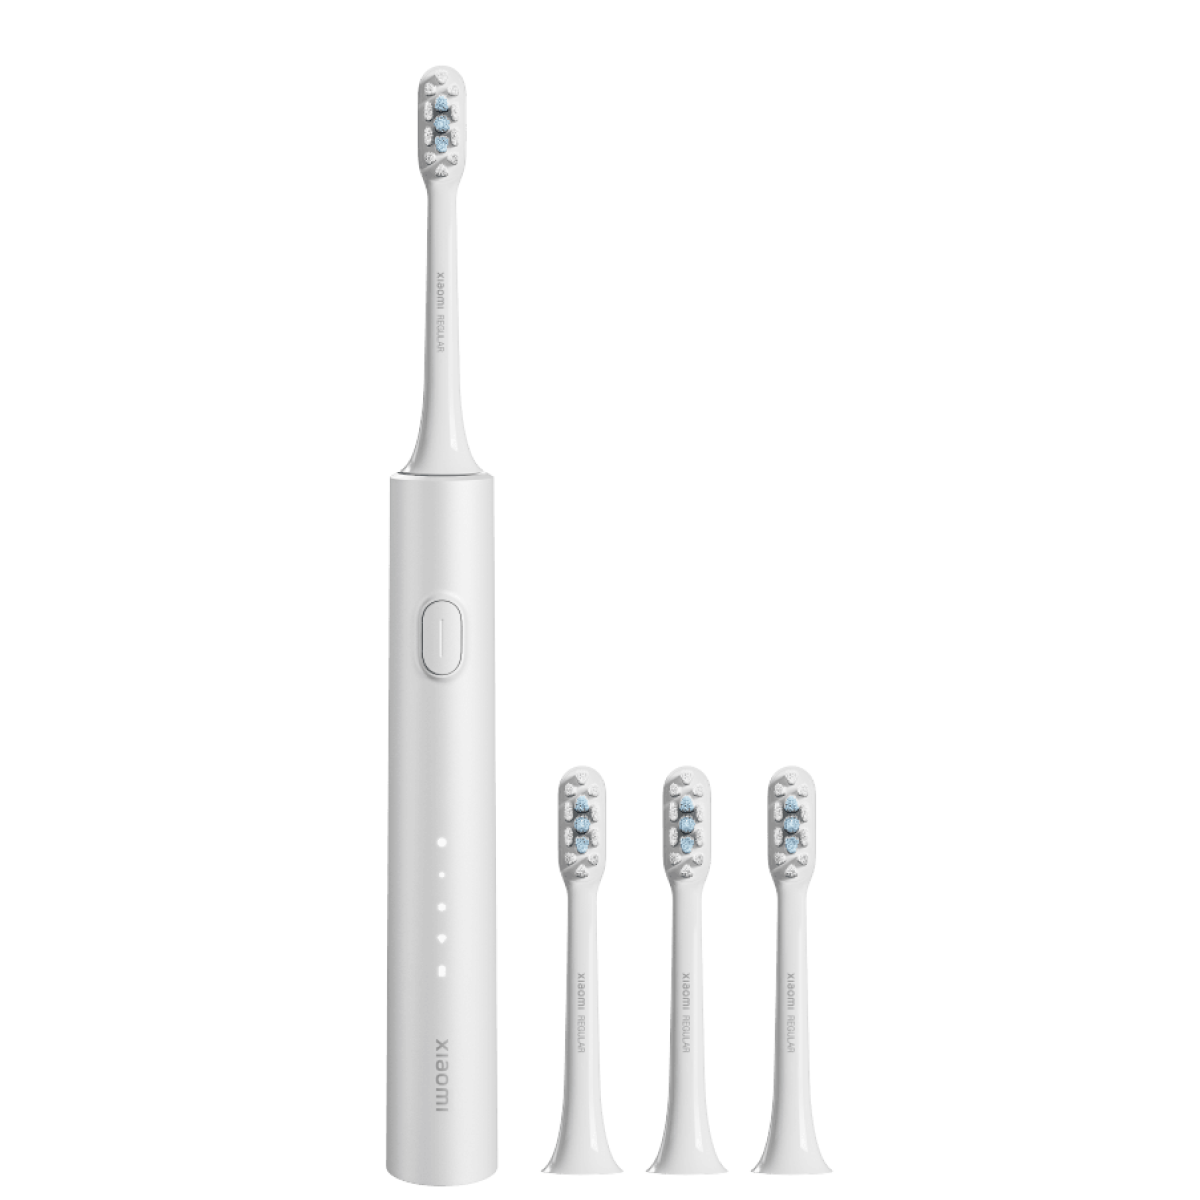 Электрическая зубная щетка Xiaomi Electric Toothbrush T302 серебристая электрическая зубная щетка xiaomi mijia t500 sonic electric toothbrush